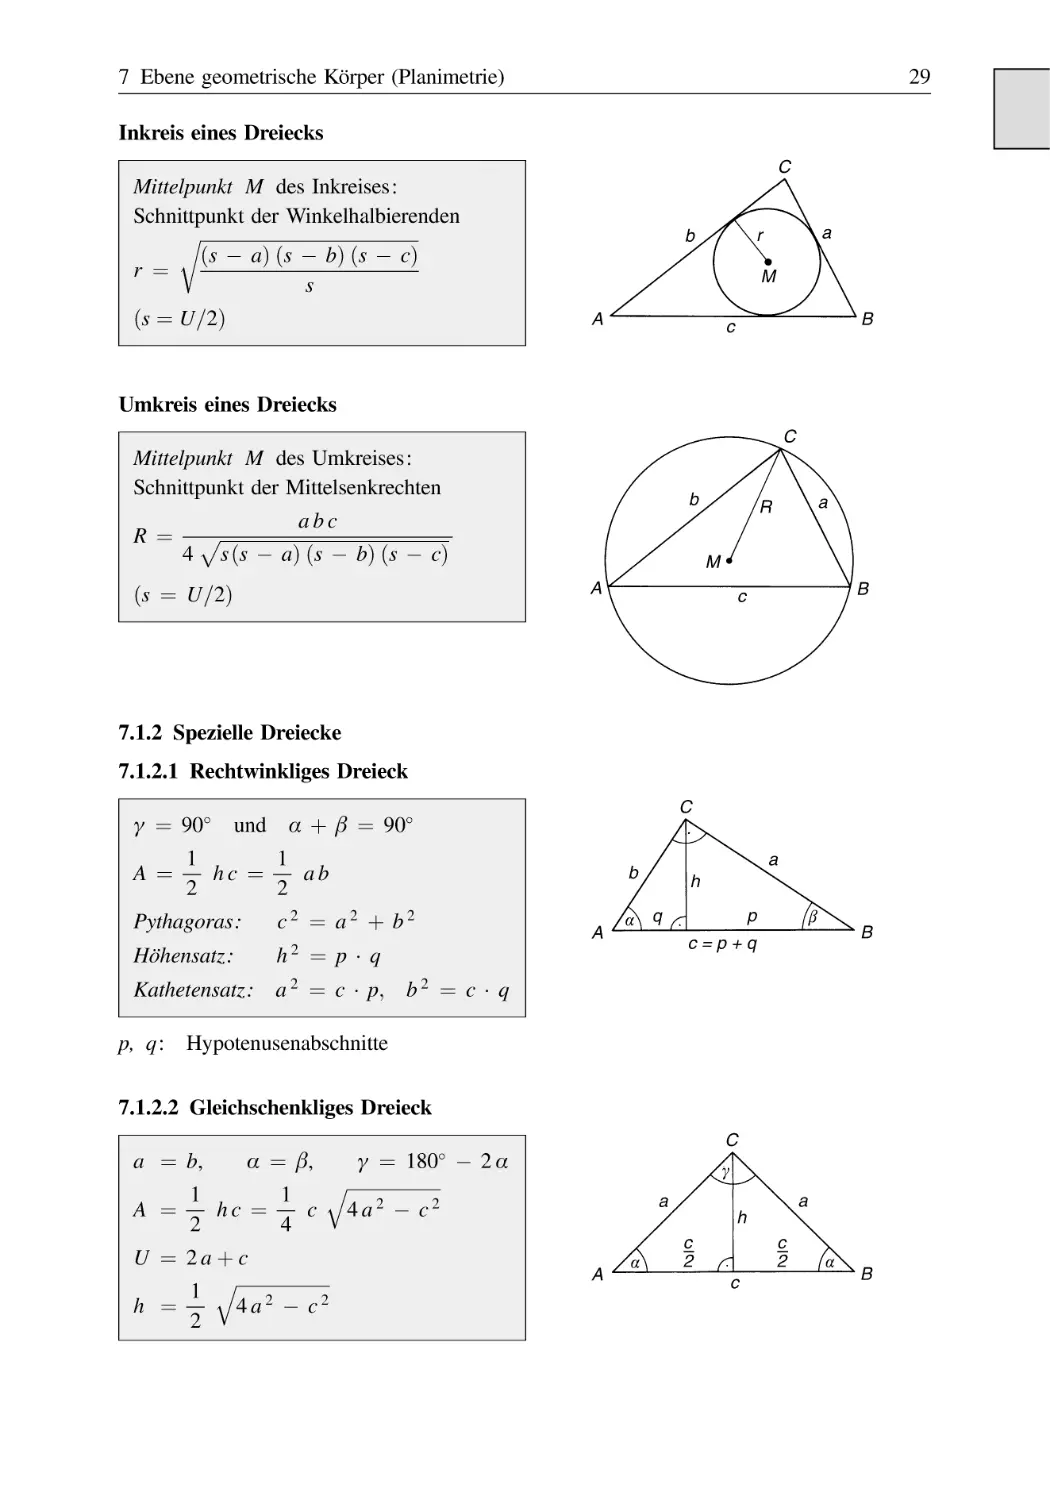 7.1.2 Spezielle Dreiecke
7.1.2.1 Rechtwinkliges Dreieck
7.1.2.2 Gleichschenkliges Dreieck